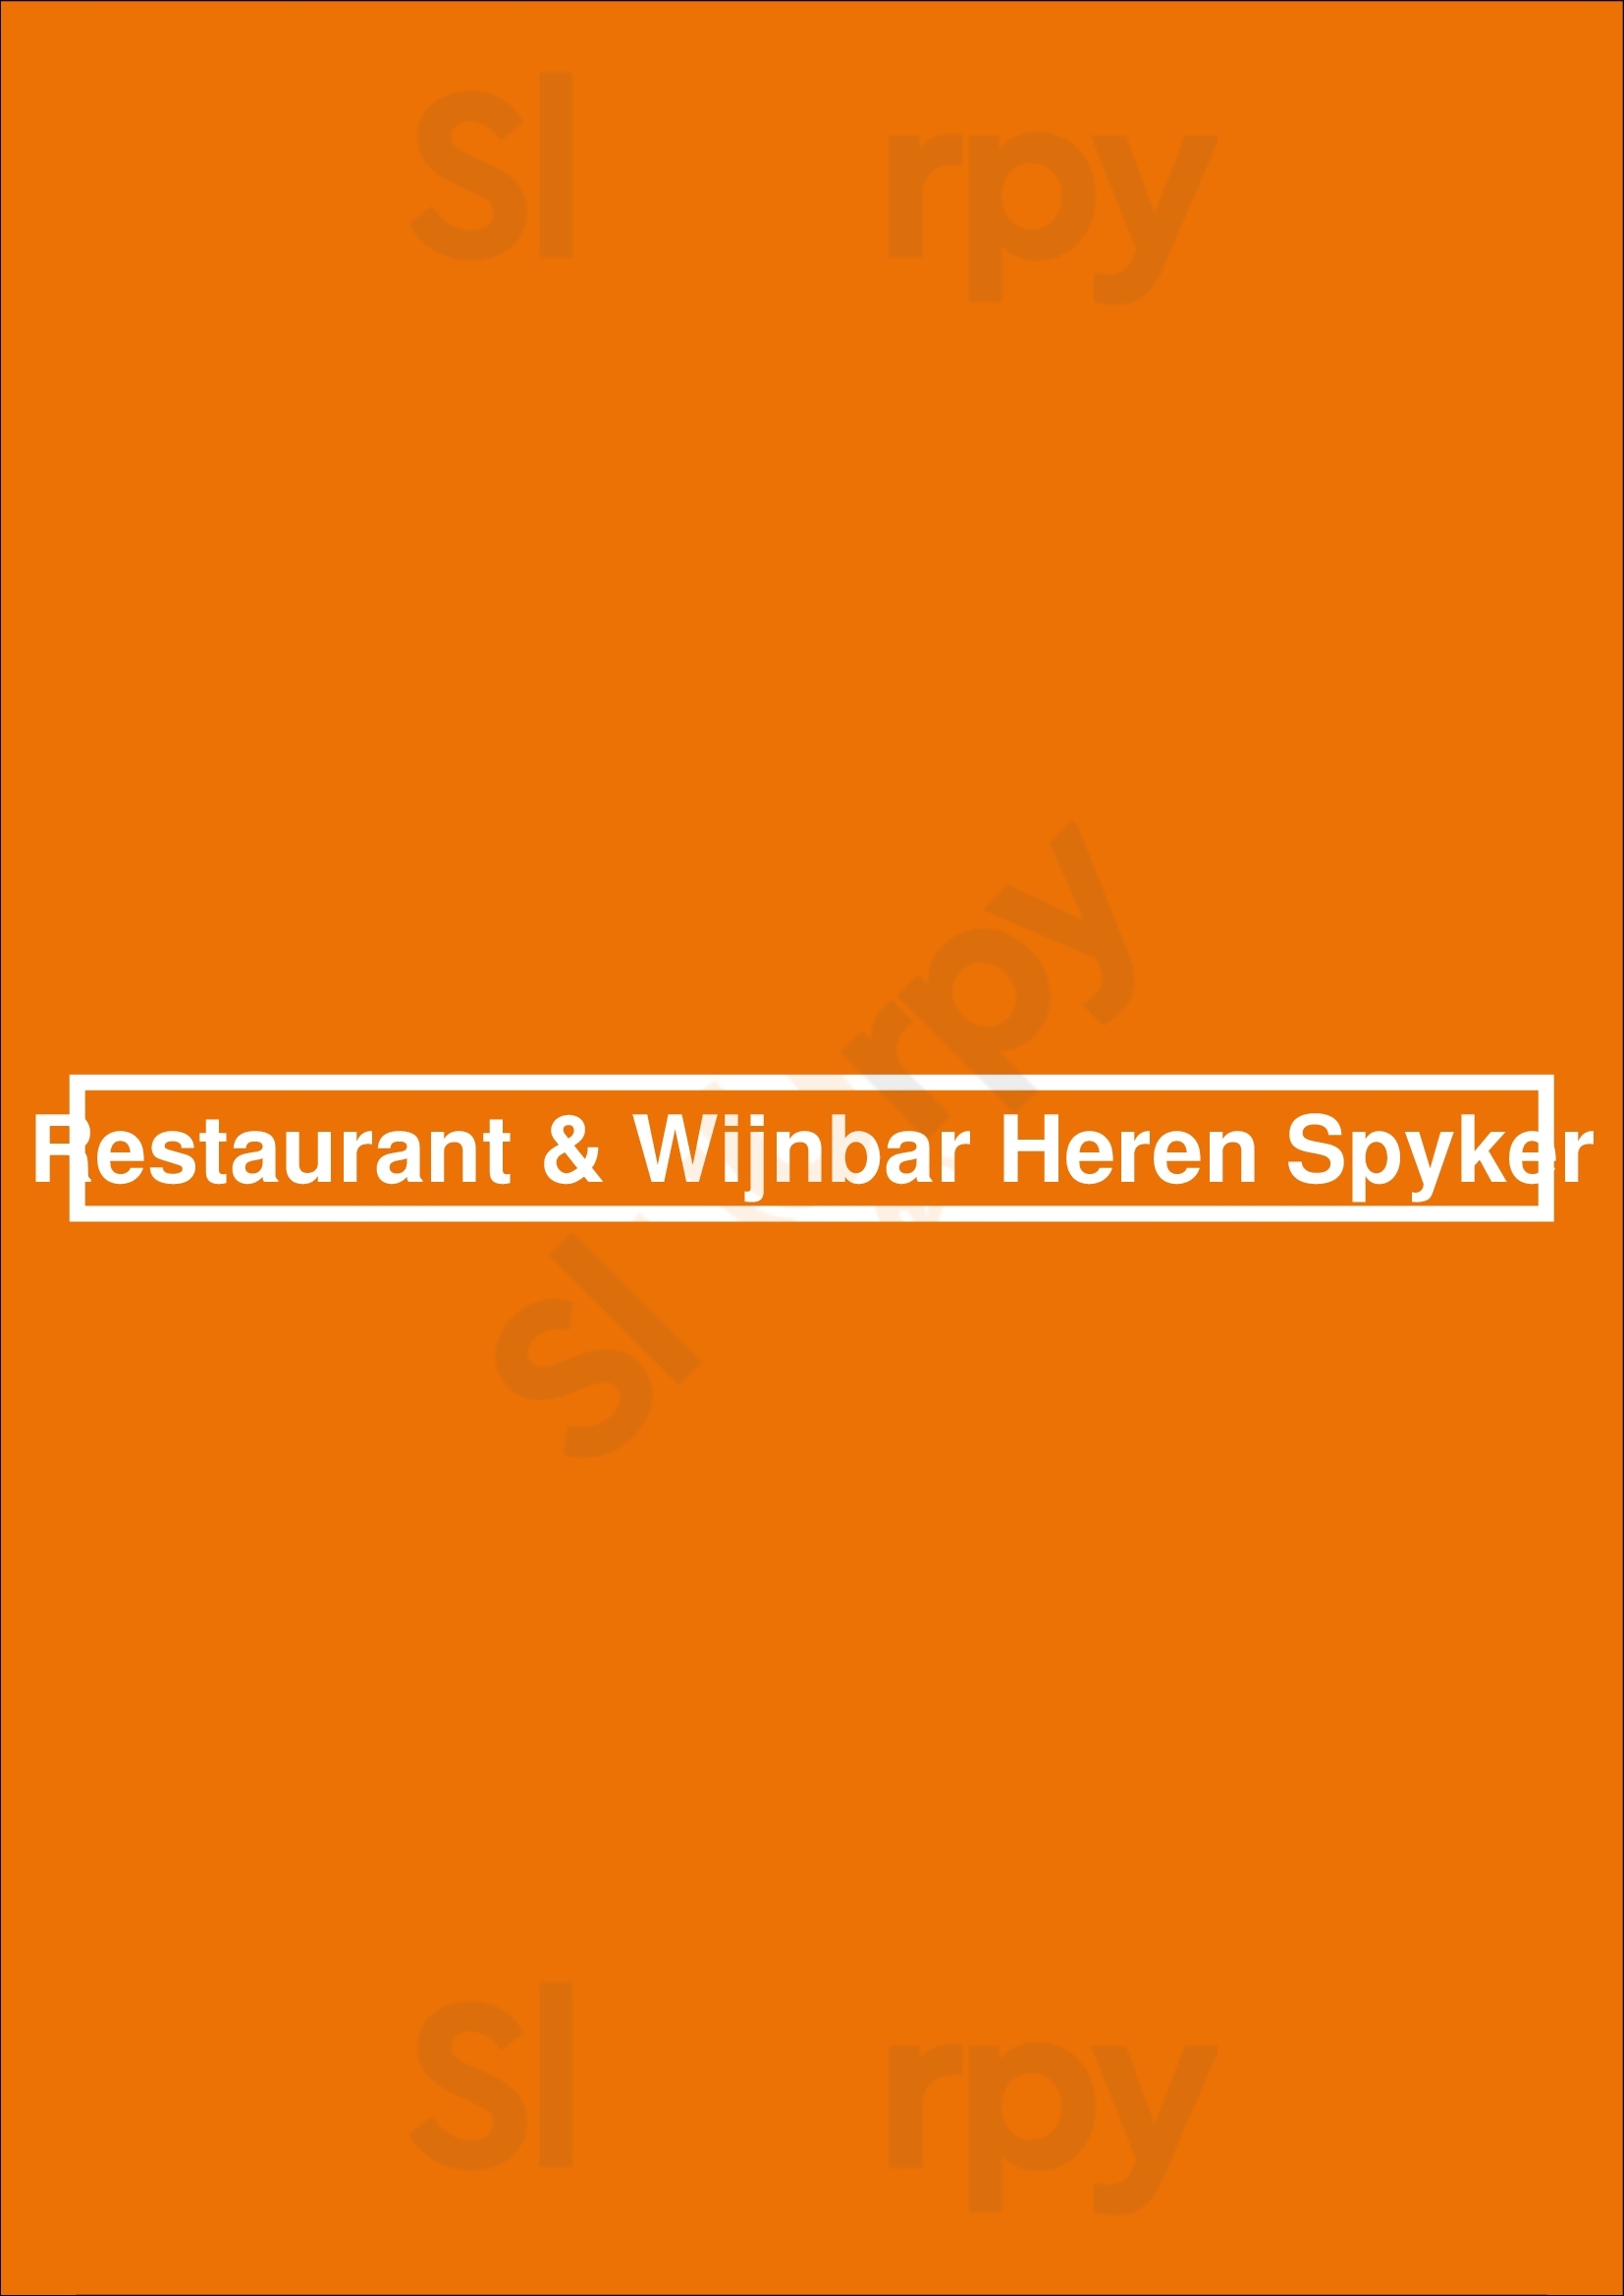 Restaurant & Wijnbar Heren Spyker Hilversum Menu - 1